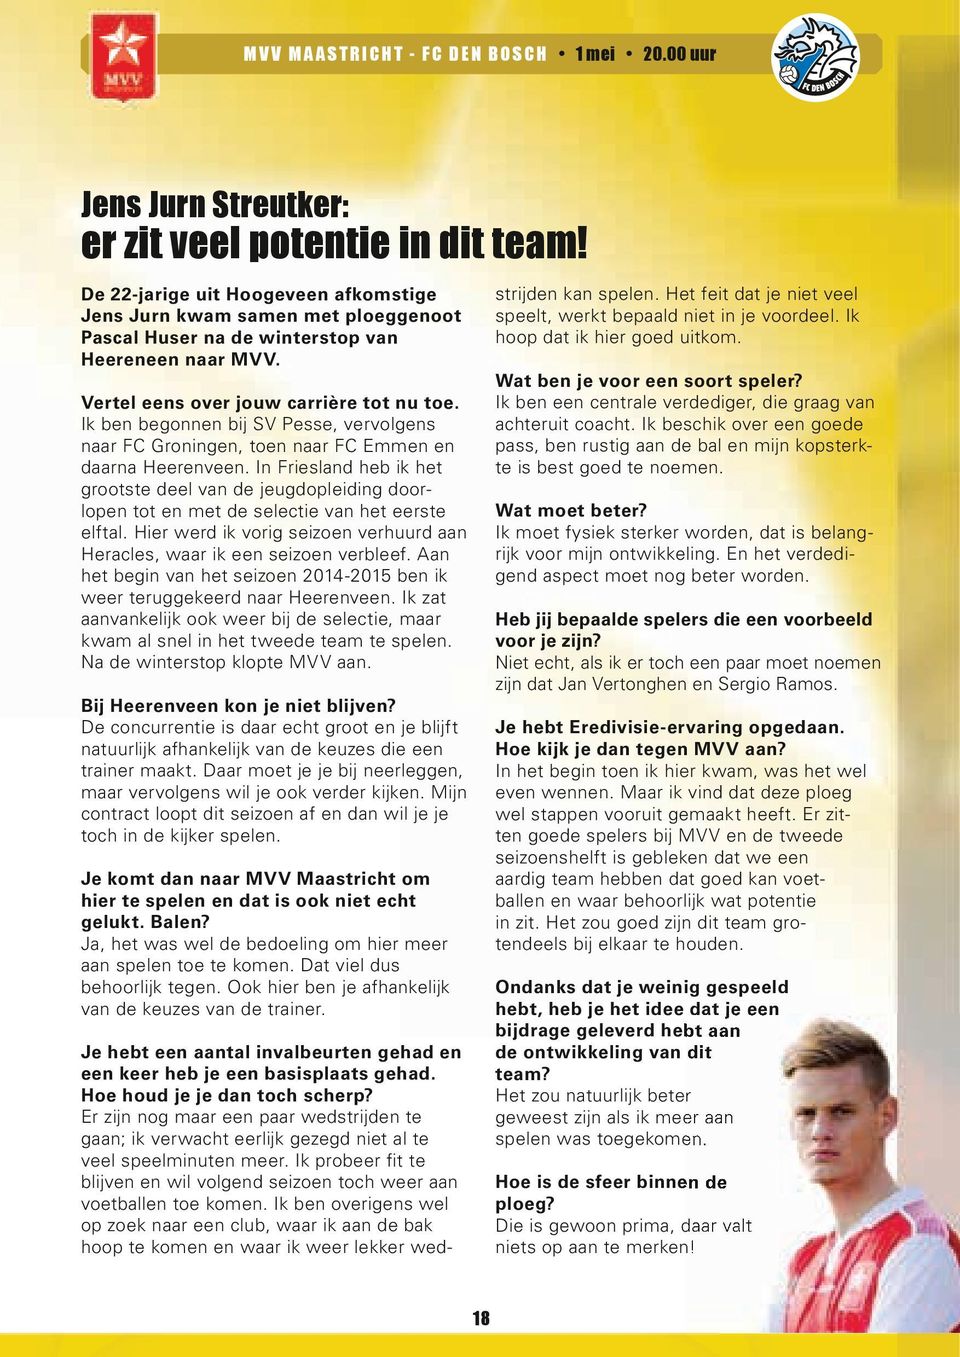 Ik ben begonnen bij SV Pesse, vervolgens naar FC Groningen, toen naar FC Emmen en daarna Heerenveen.